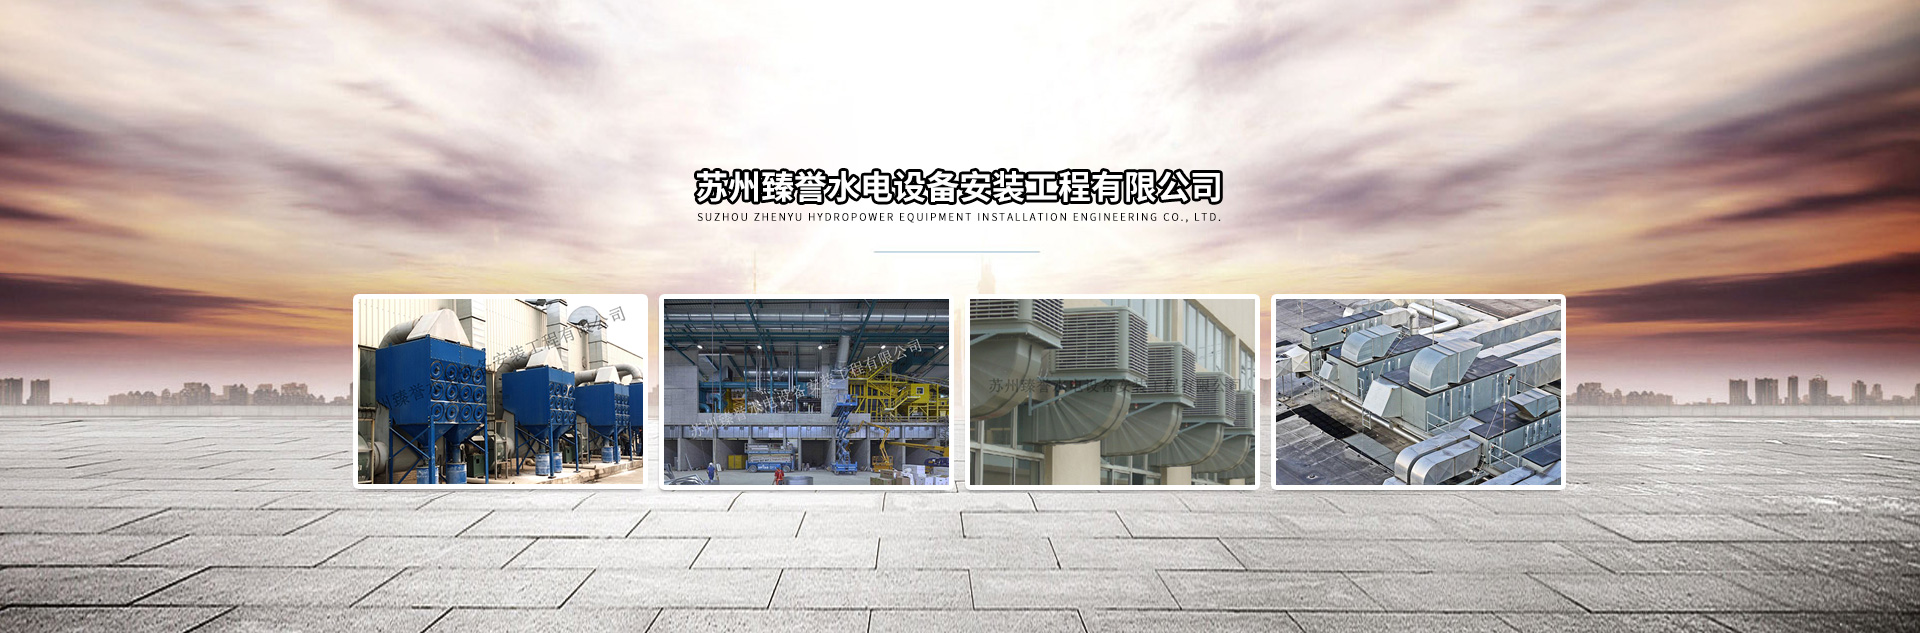 苏州臻誉水电设备安装工程有限公司